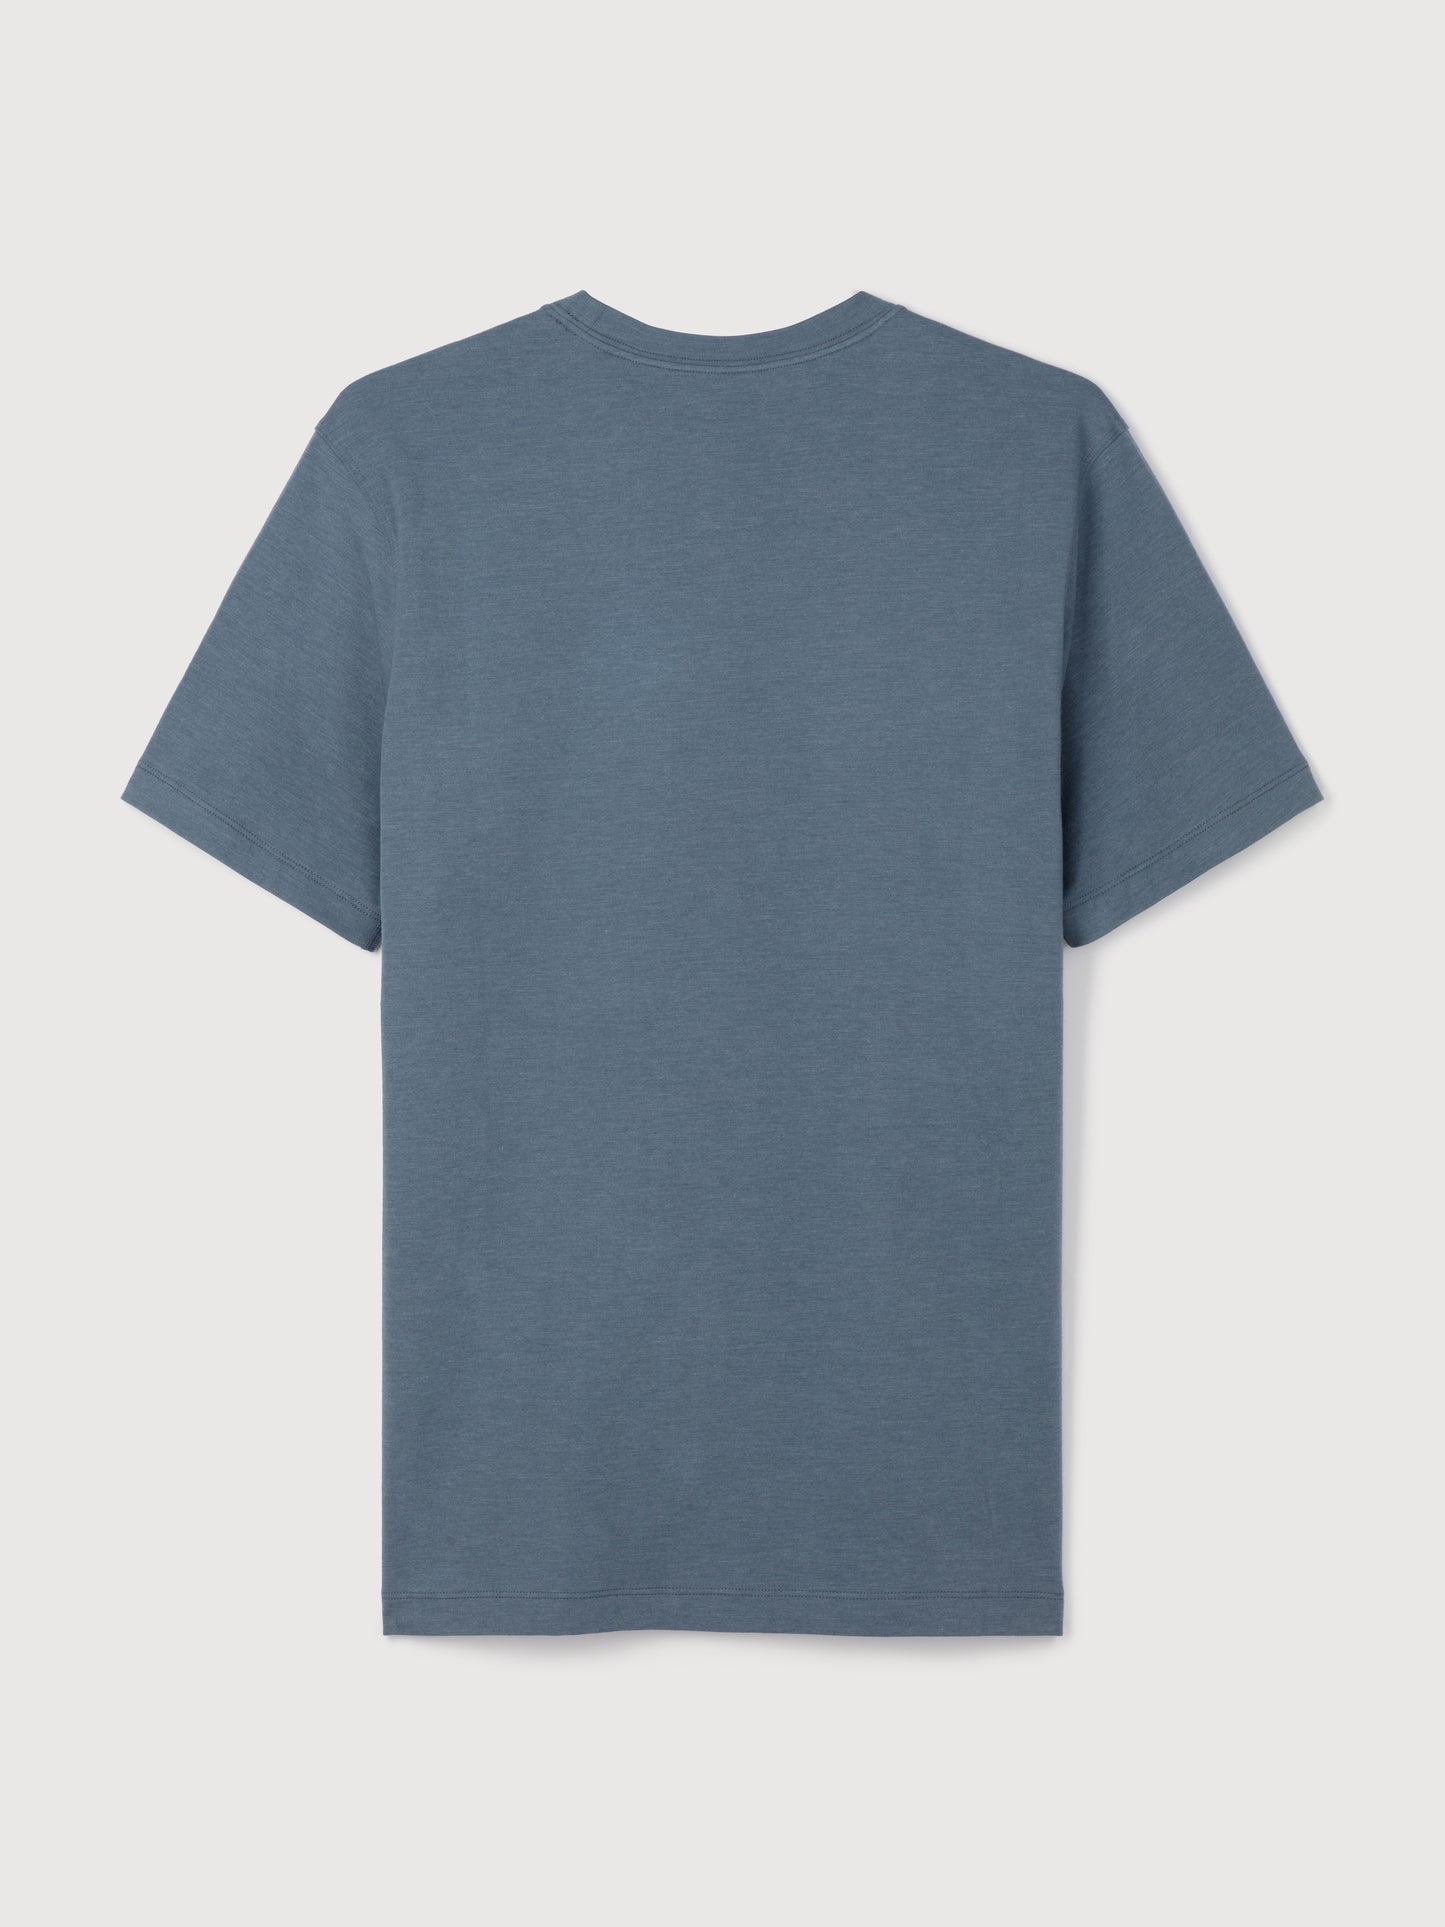 Short Sleeve T-Shirt - Storm Blue